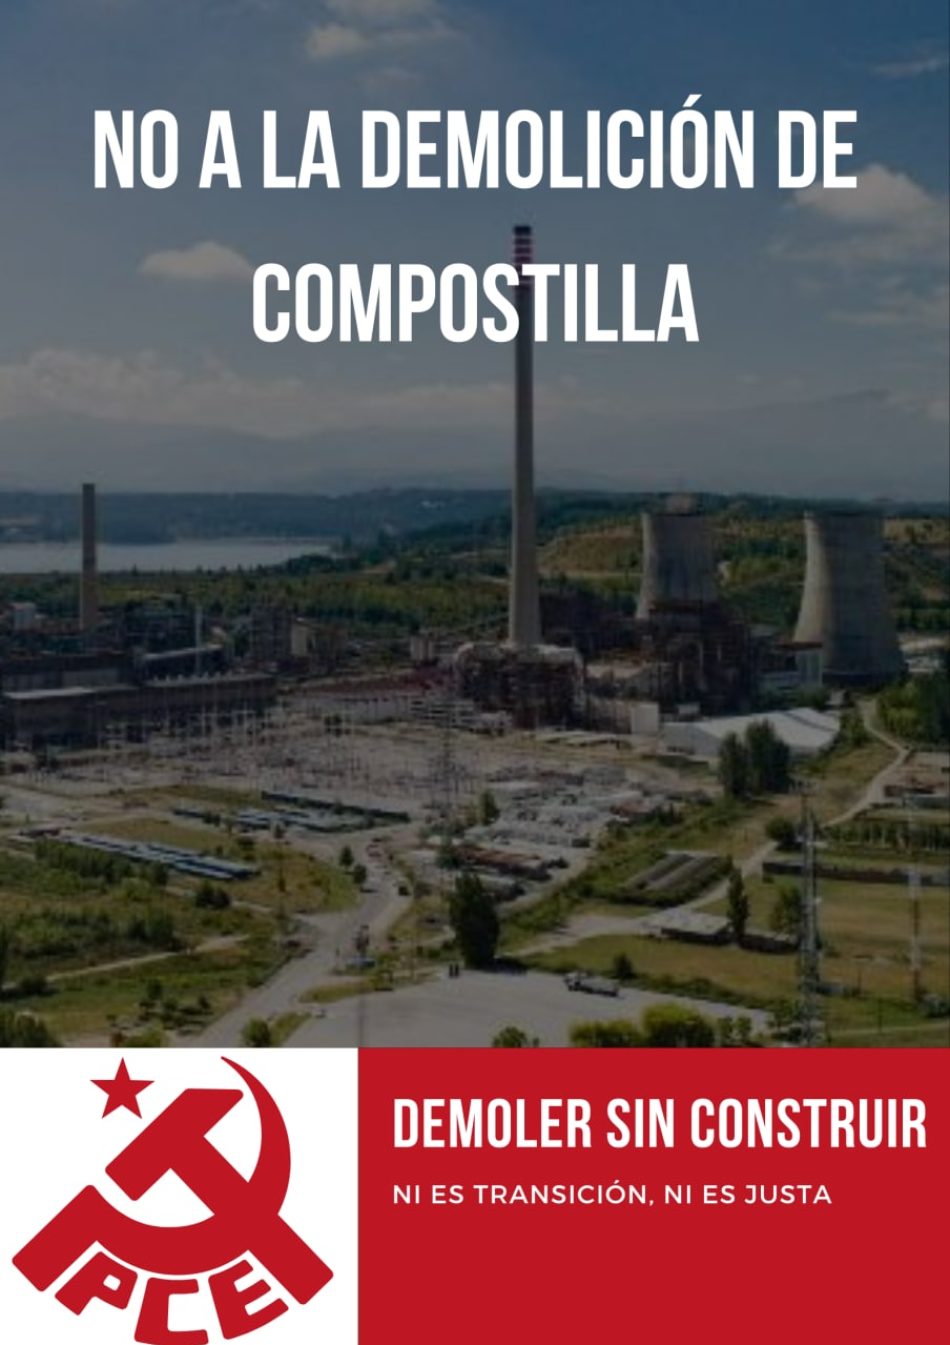 El PCE lanza un llamado a todas las administraciones y fuerzas políticas para evitar la demolición de las torres de Compostilla II